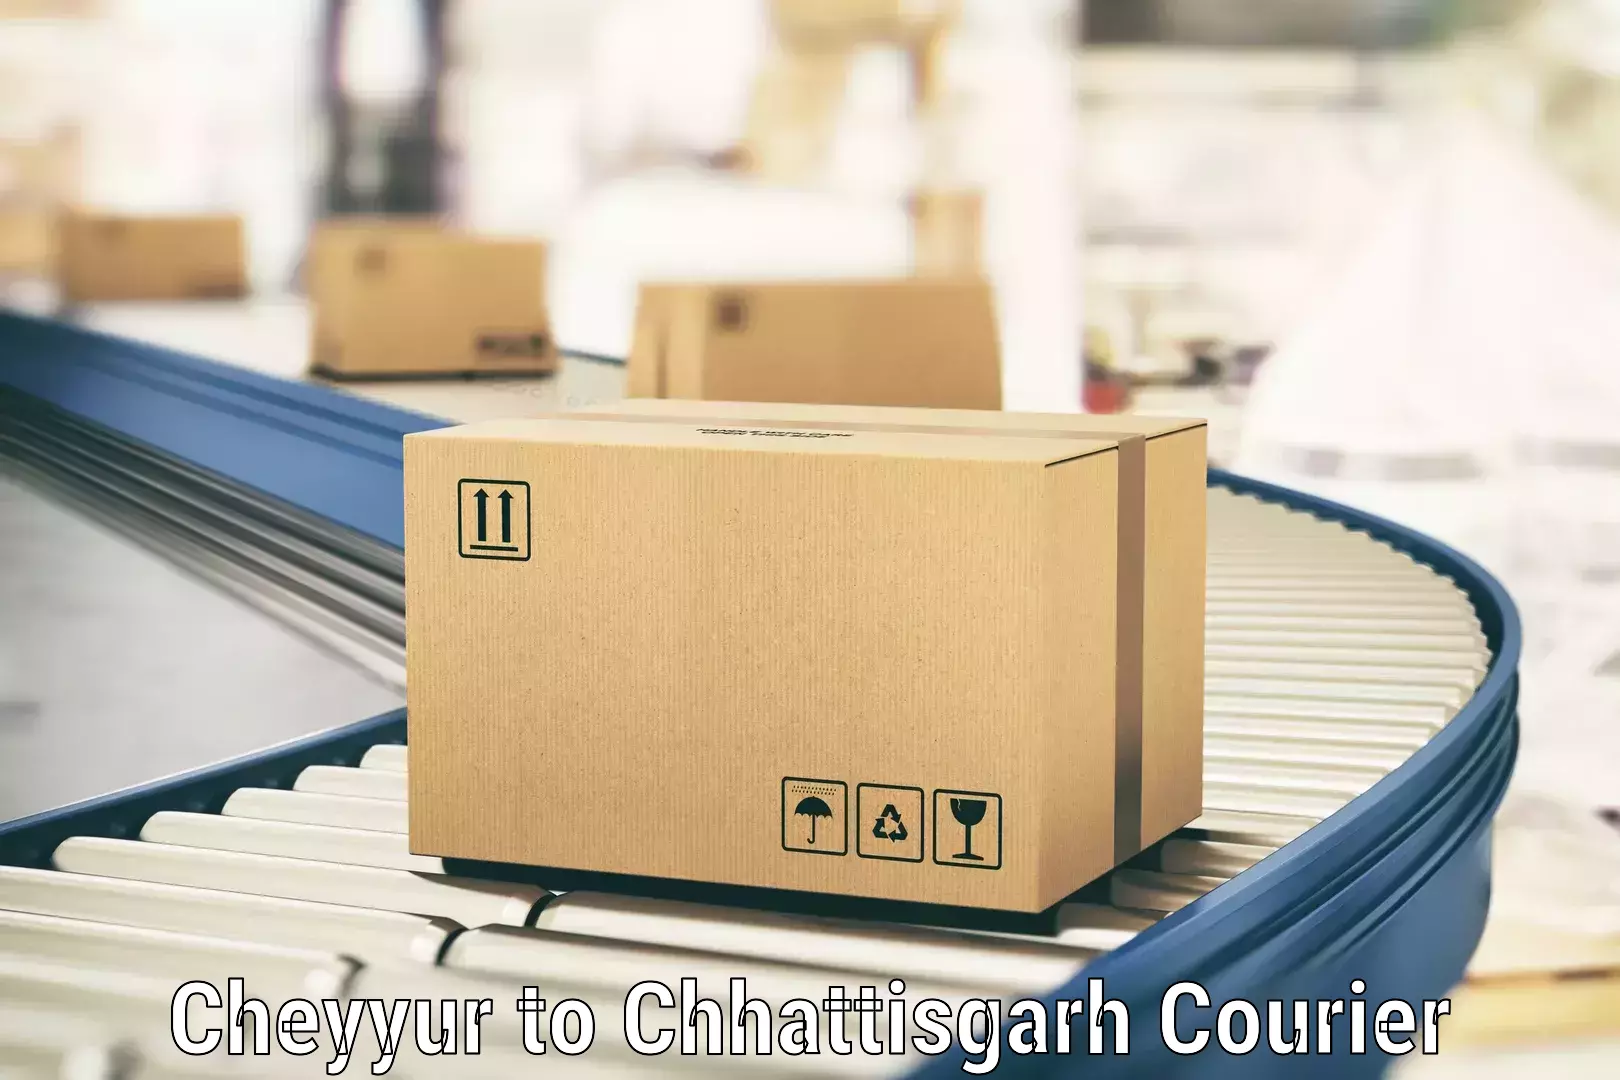 Efficient cargo services Cheyyur to Raigarh Chhattisgarh